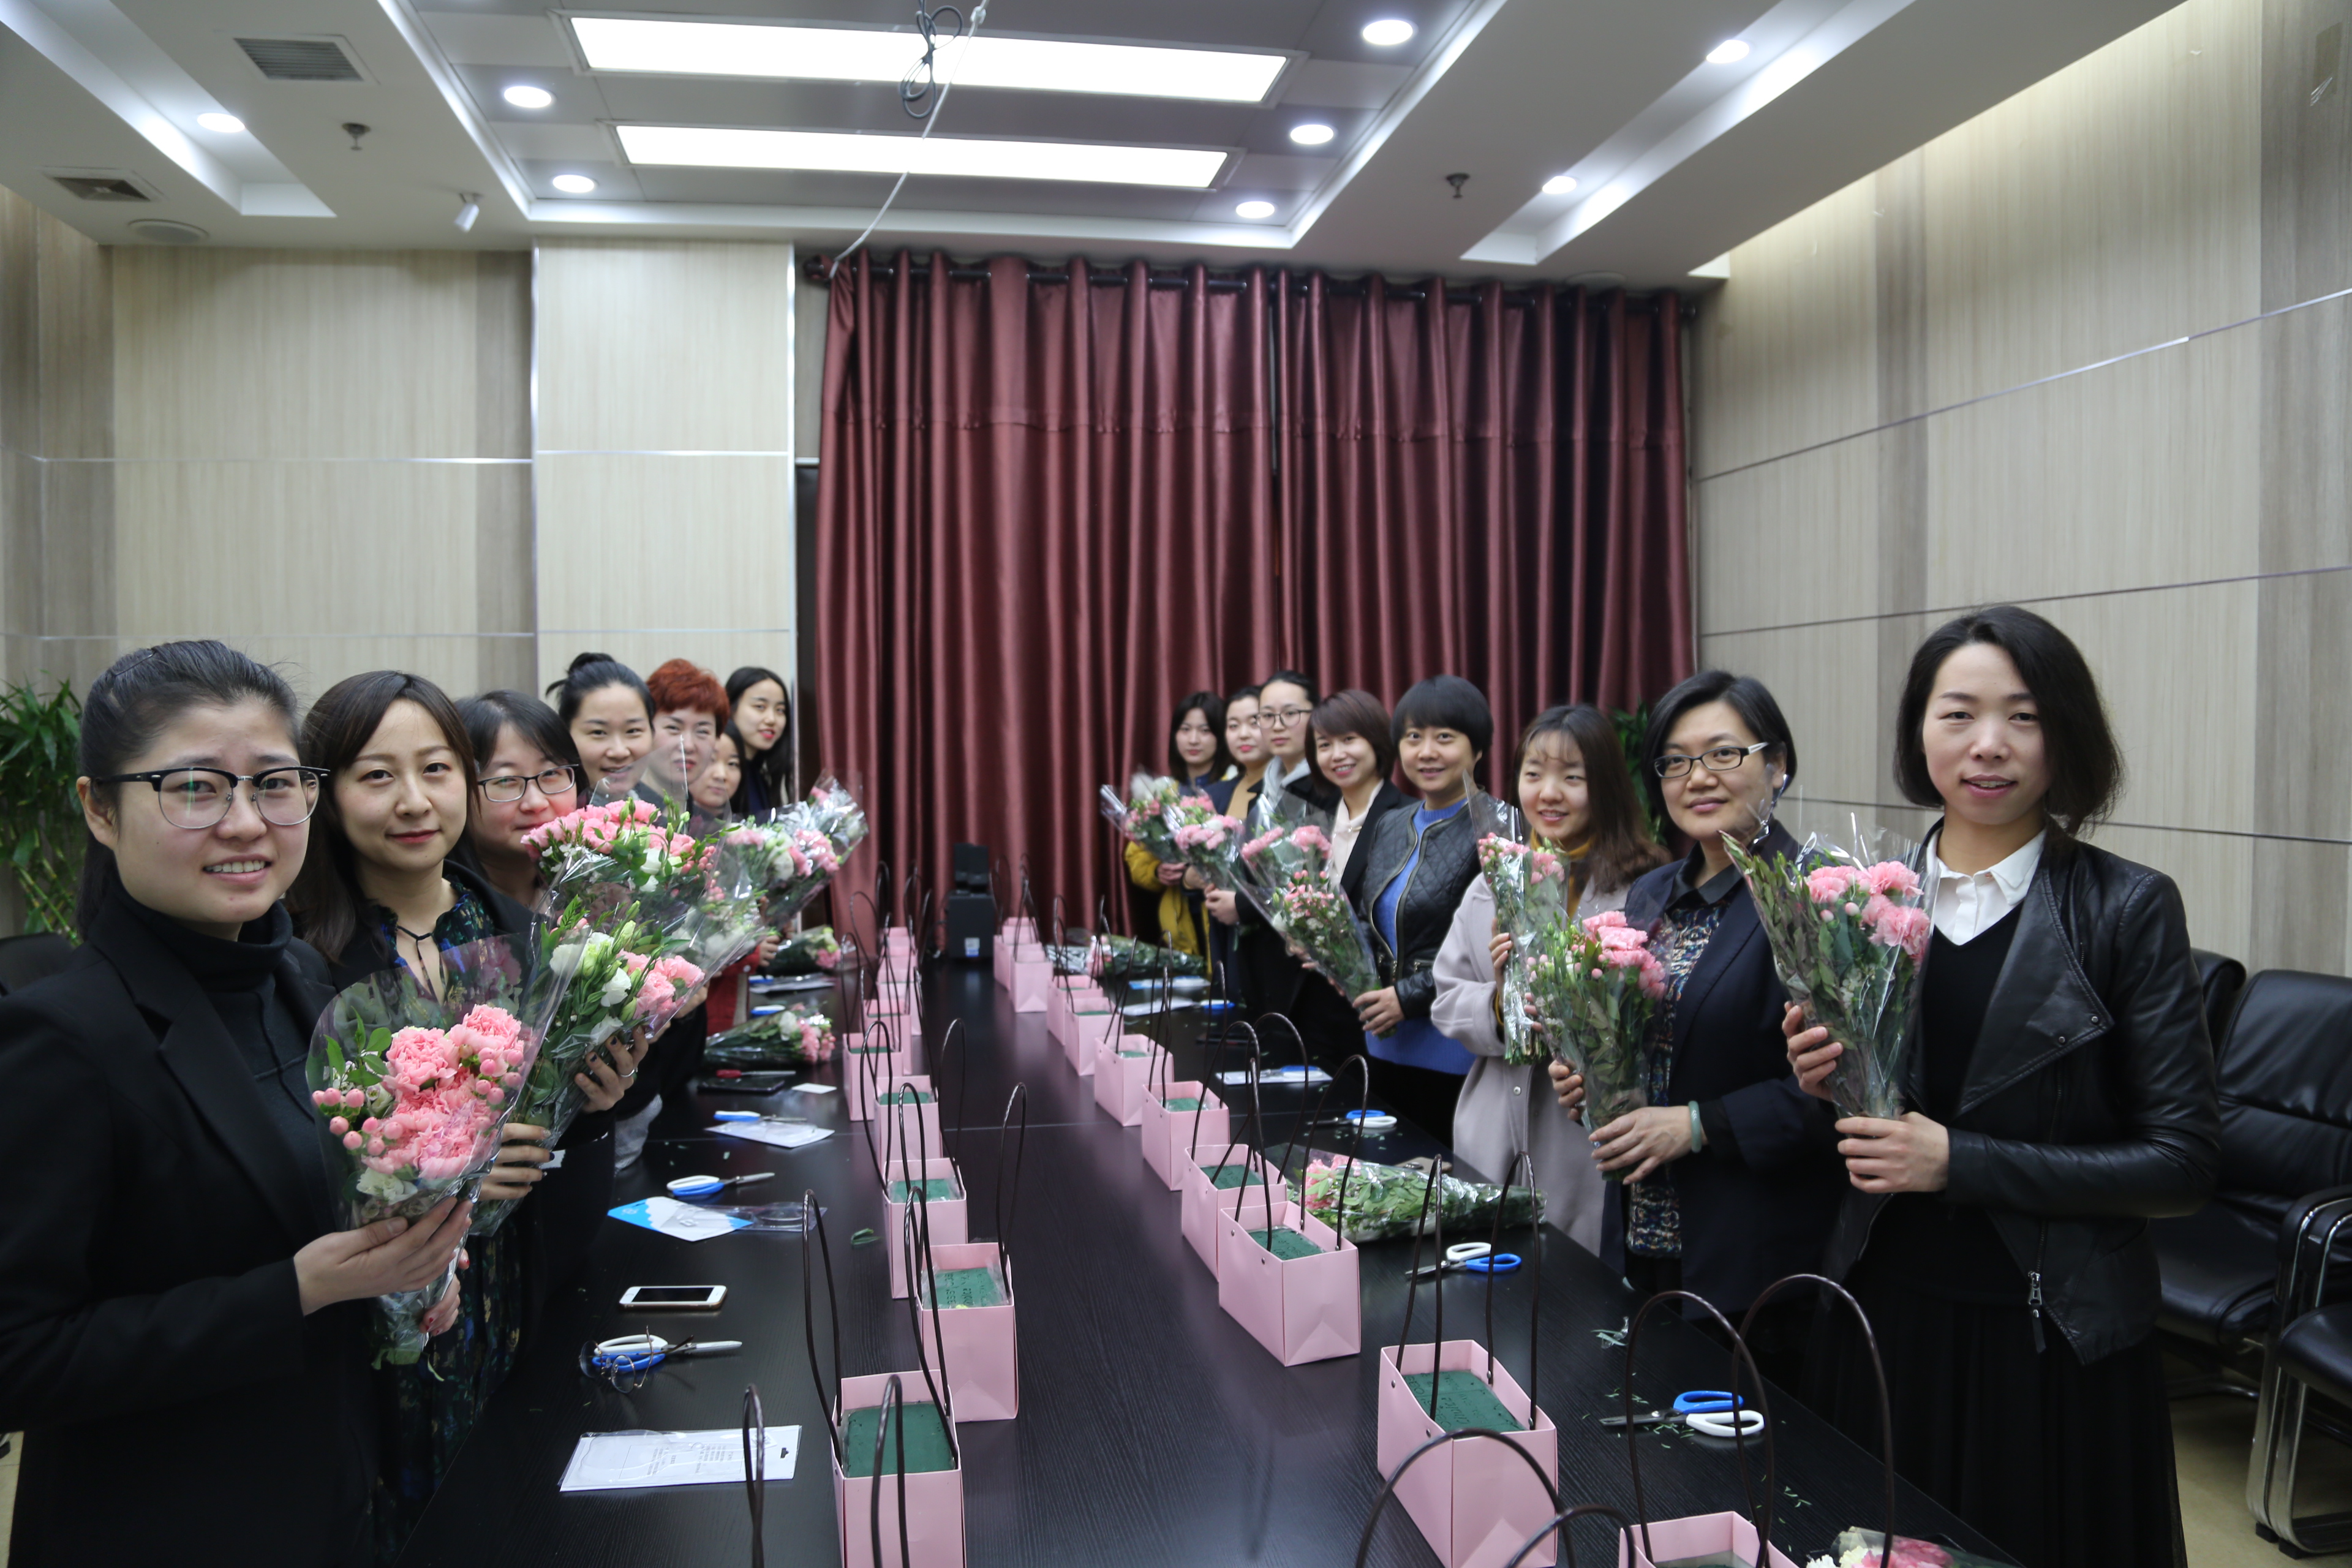 国信小贷组织插花活动庆祝“三八妇女节”